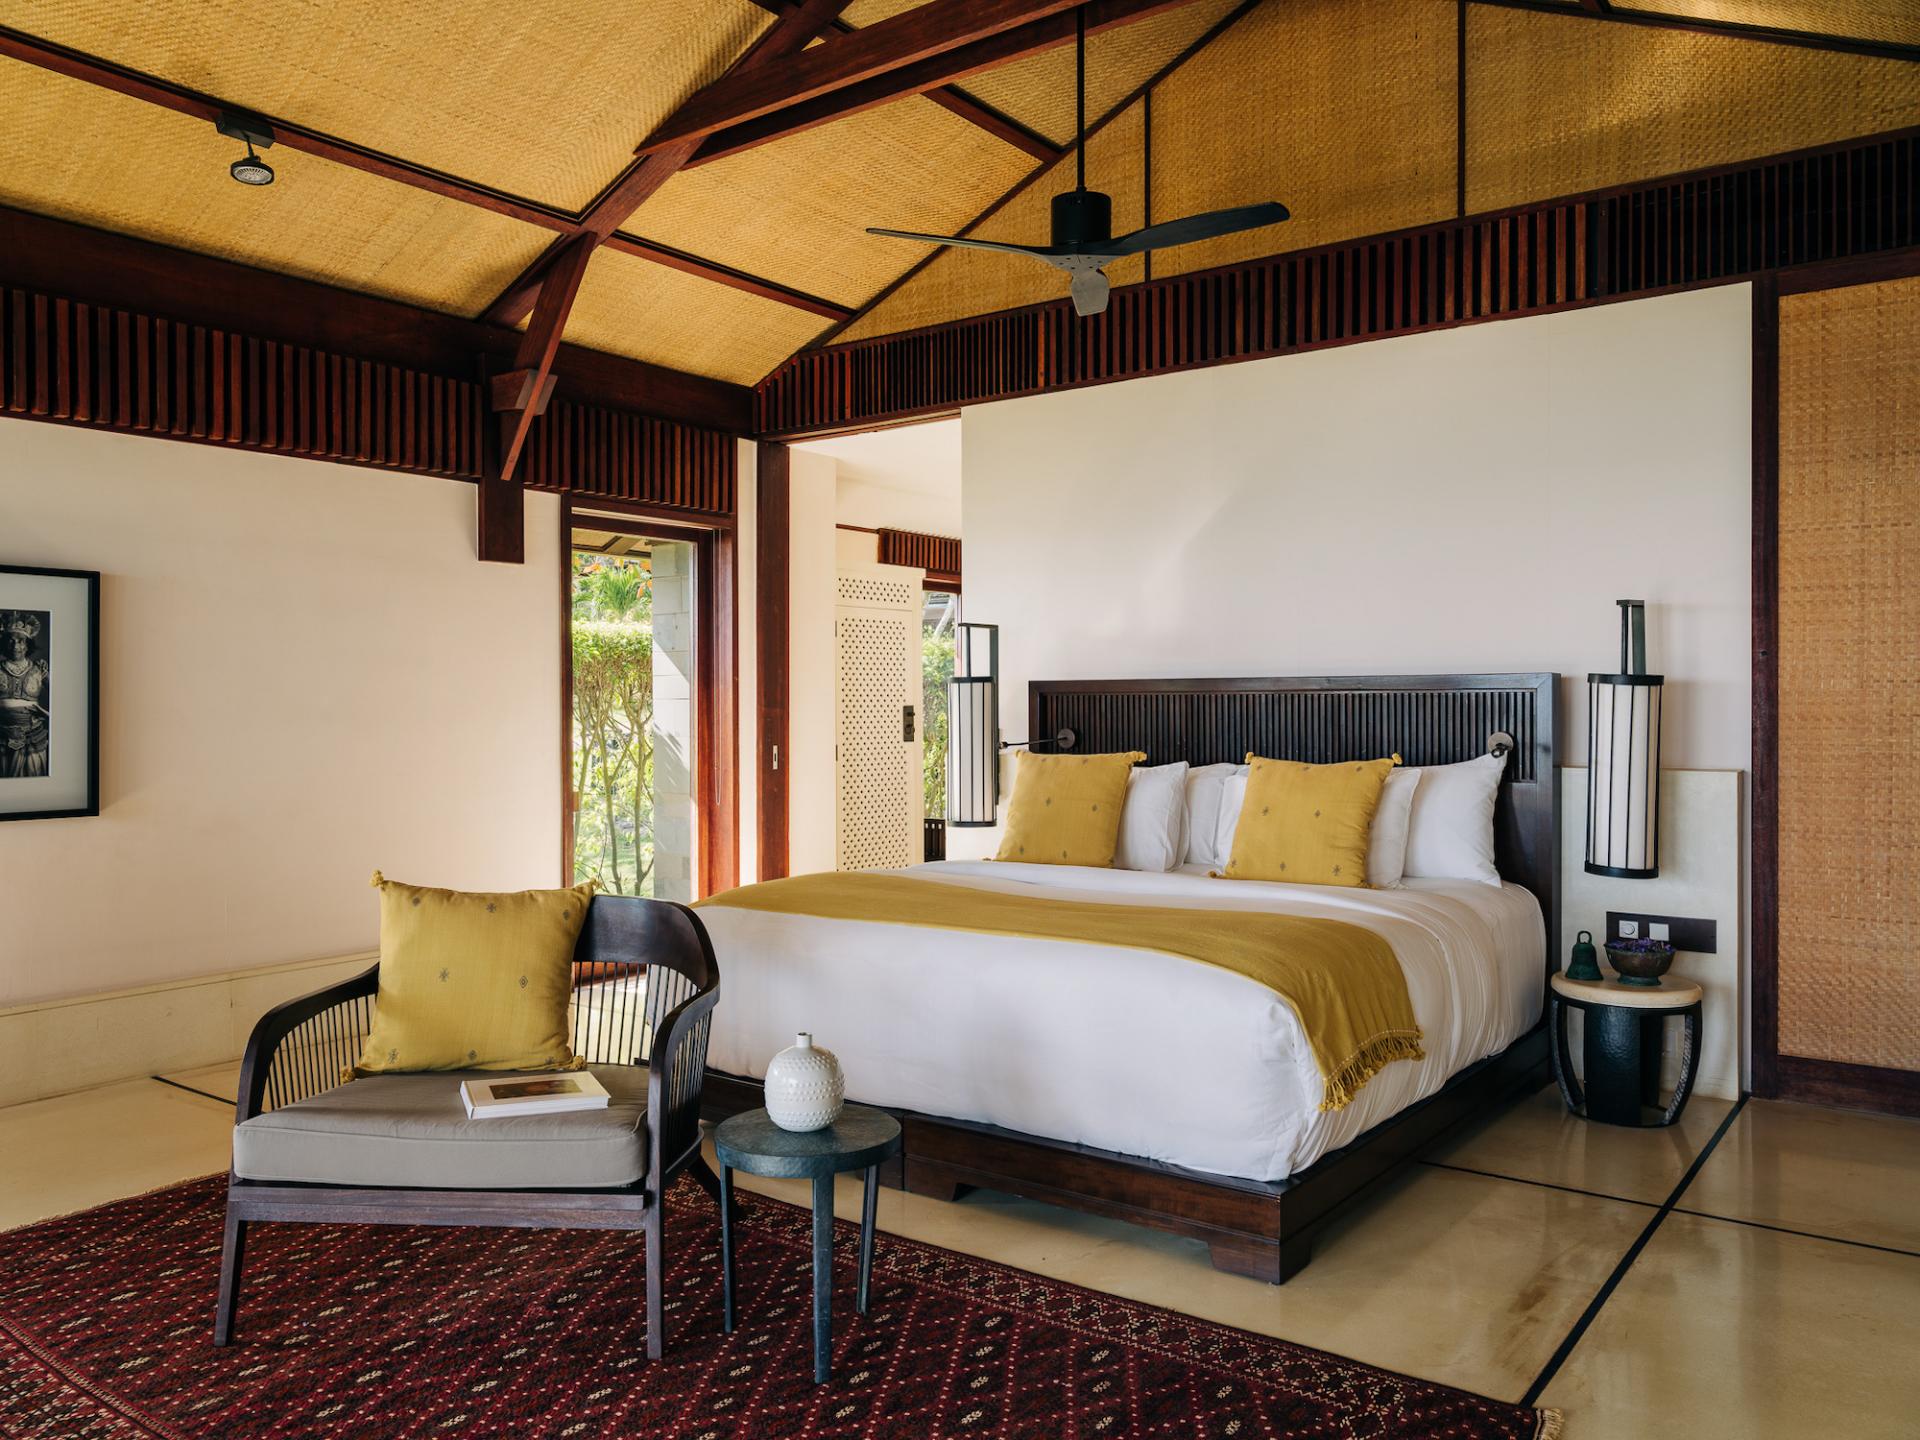 ÀNI Sri Lanka Resort Offers a New Wave of Luxury 